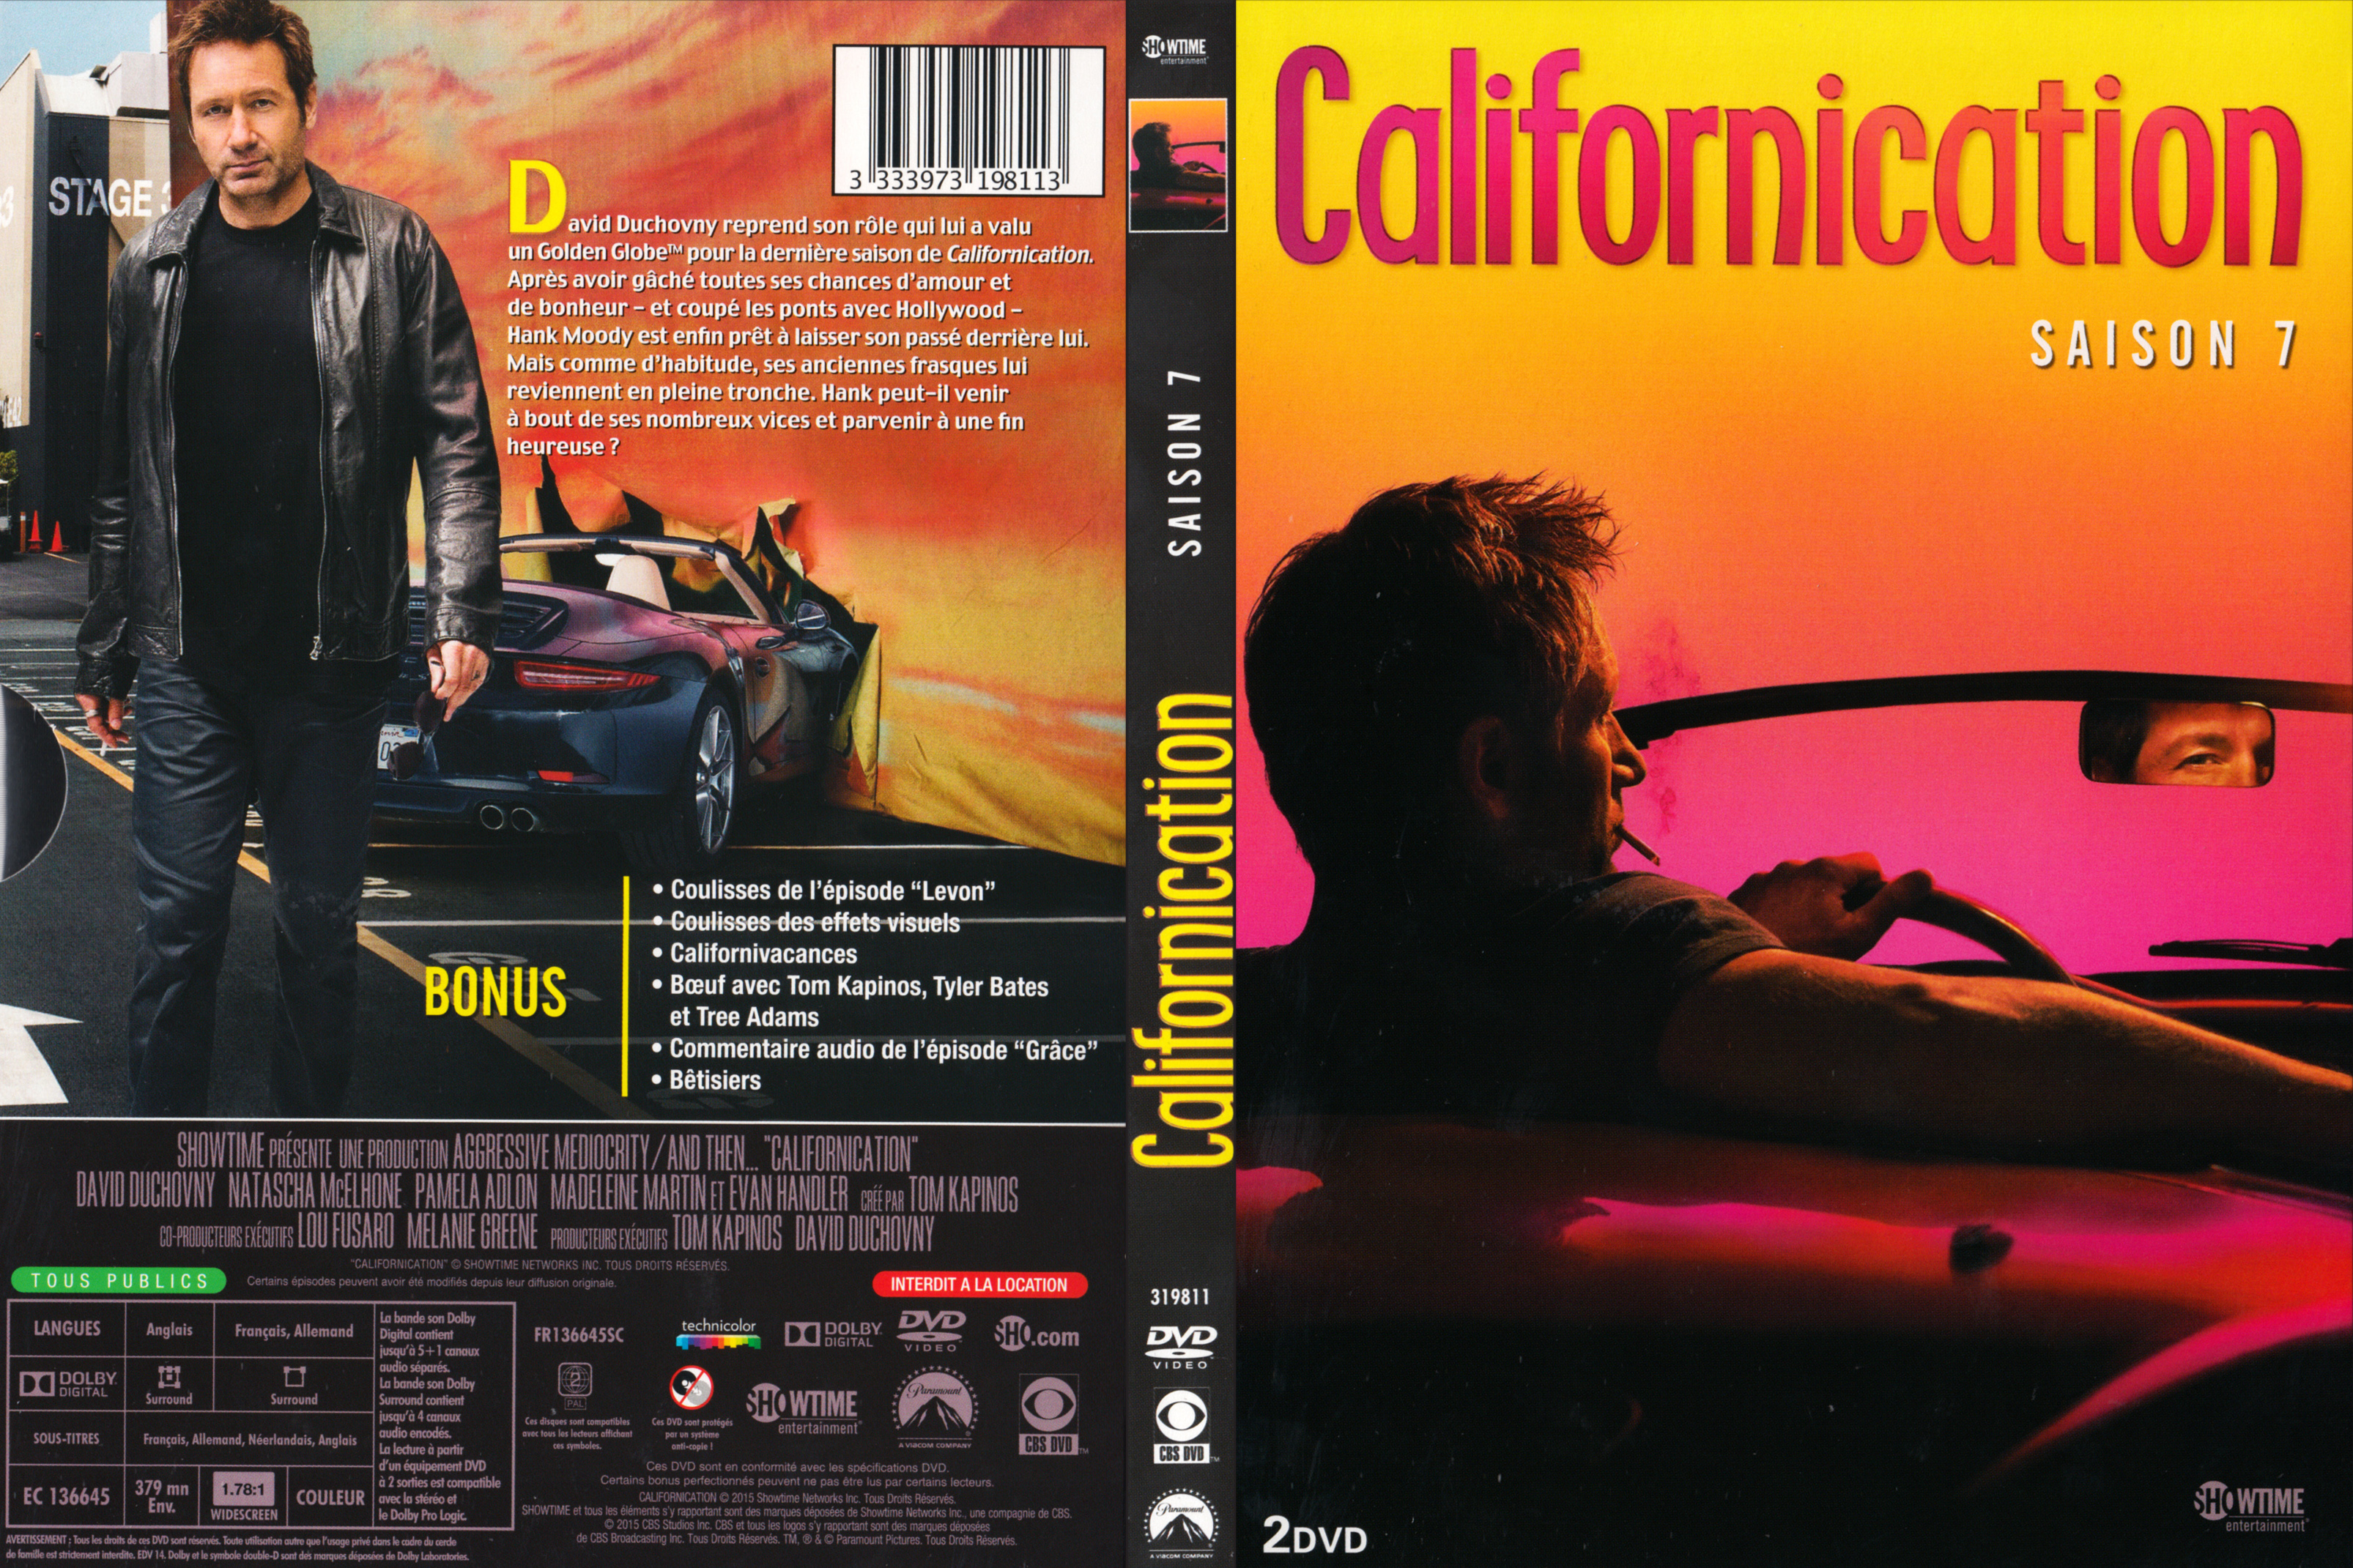 Jaquette DVD Californication Saison 7